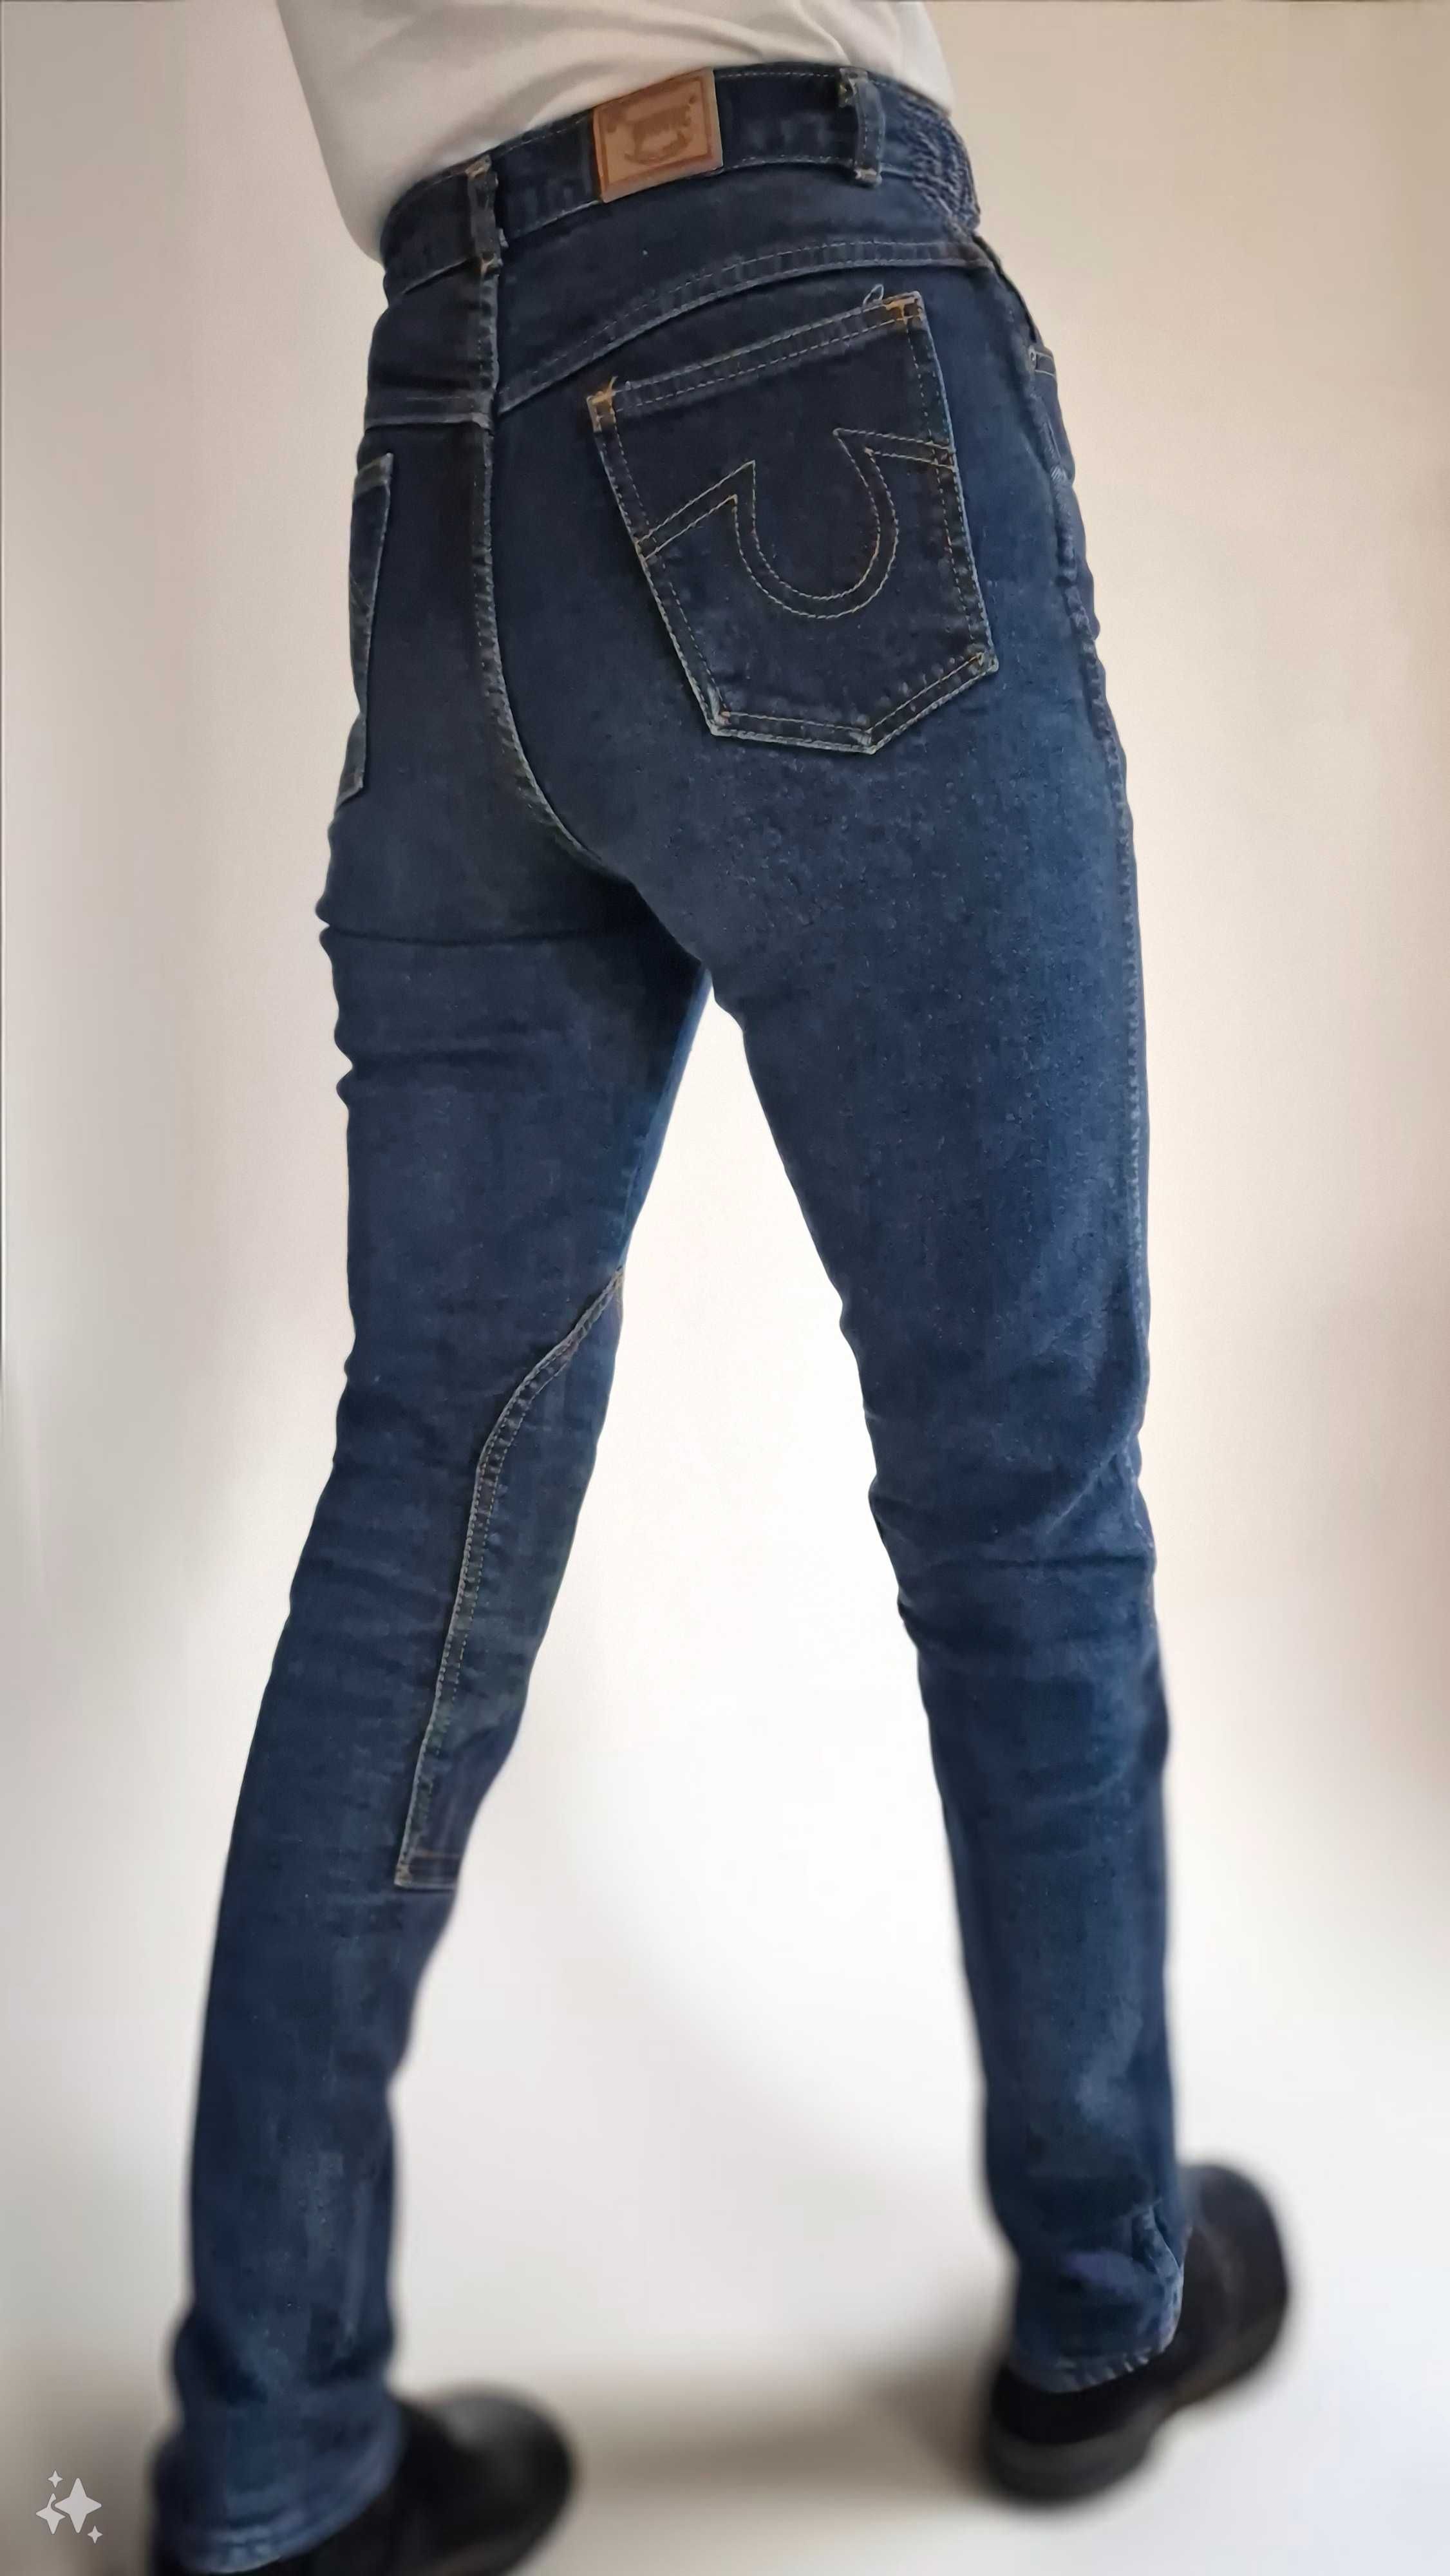 Spodnie - bryczesy damskie dżinsowe Indigo Denim